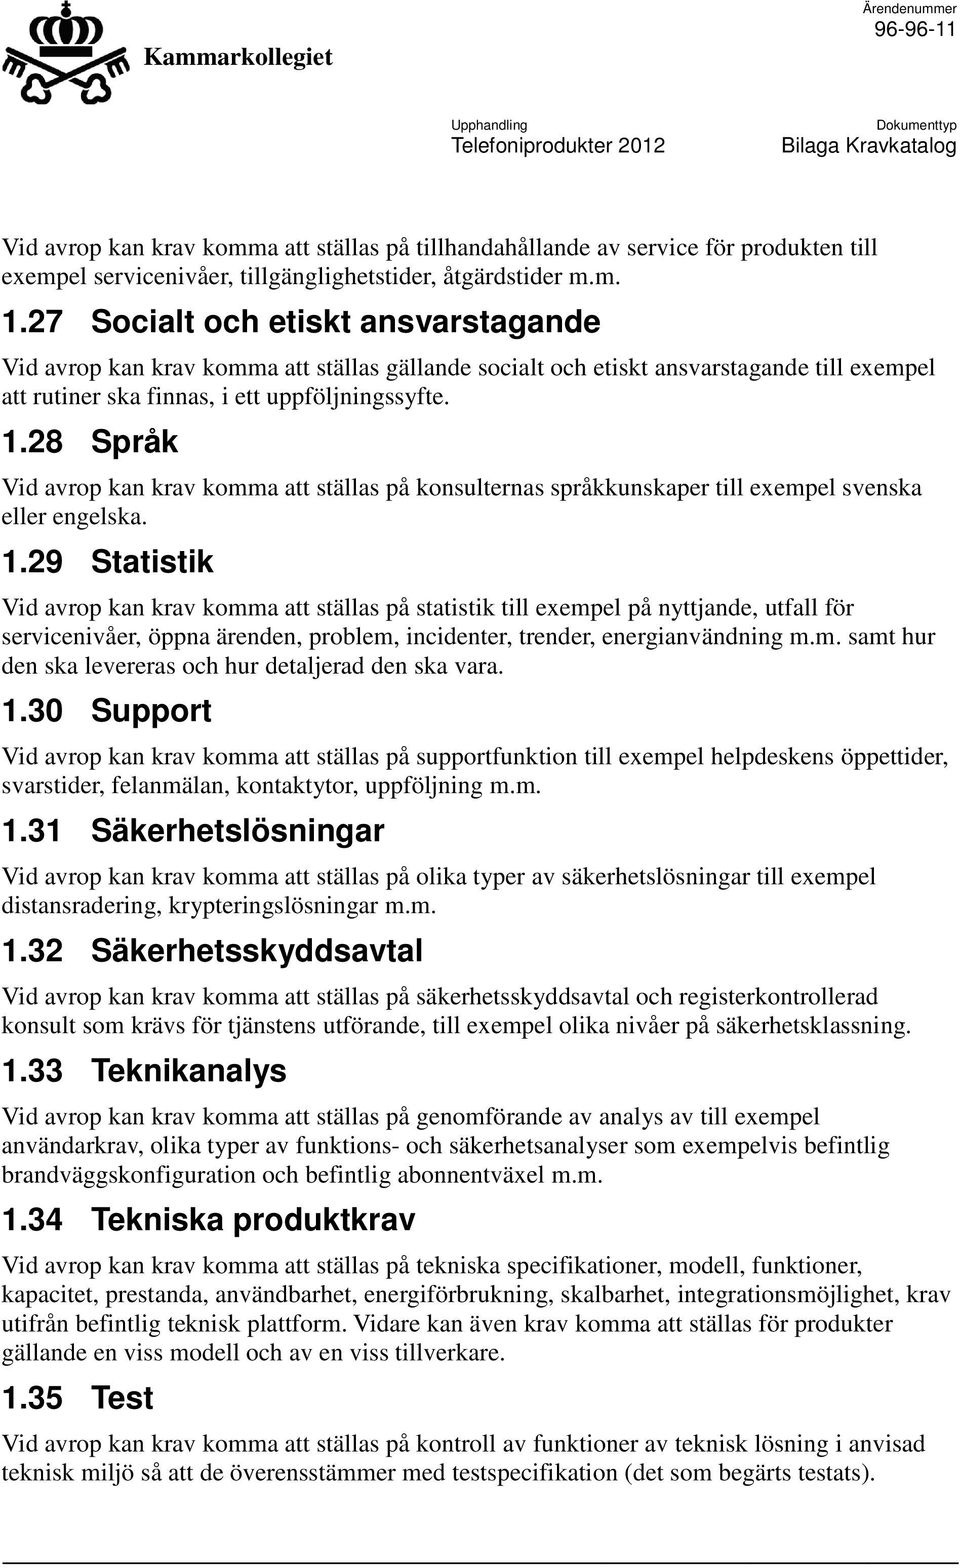 28 Språk Vid avrop kan krav komma att ställas på konsulternas språkkunskaper till exempel svenska eller engelska. 1.